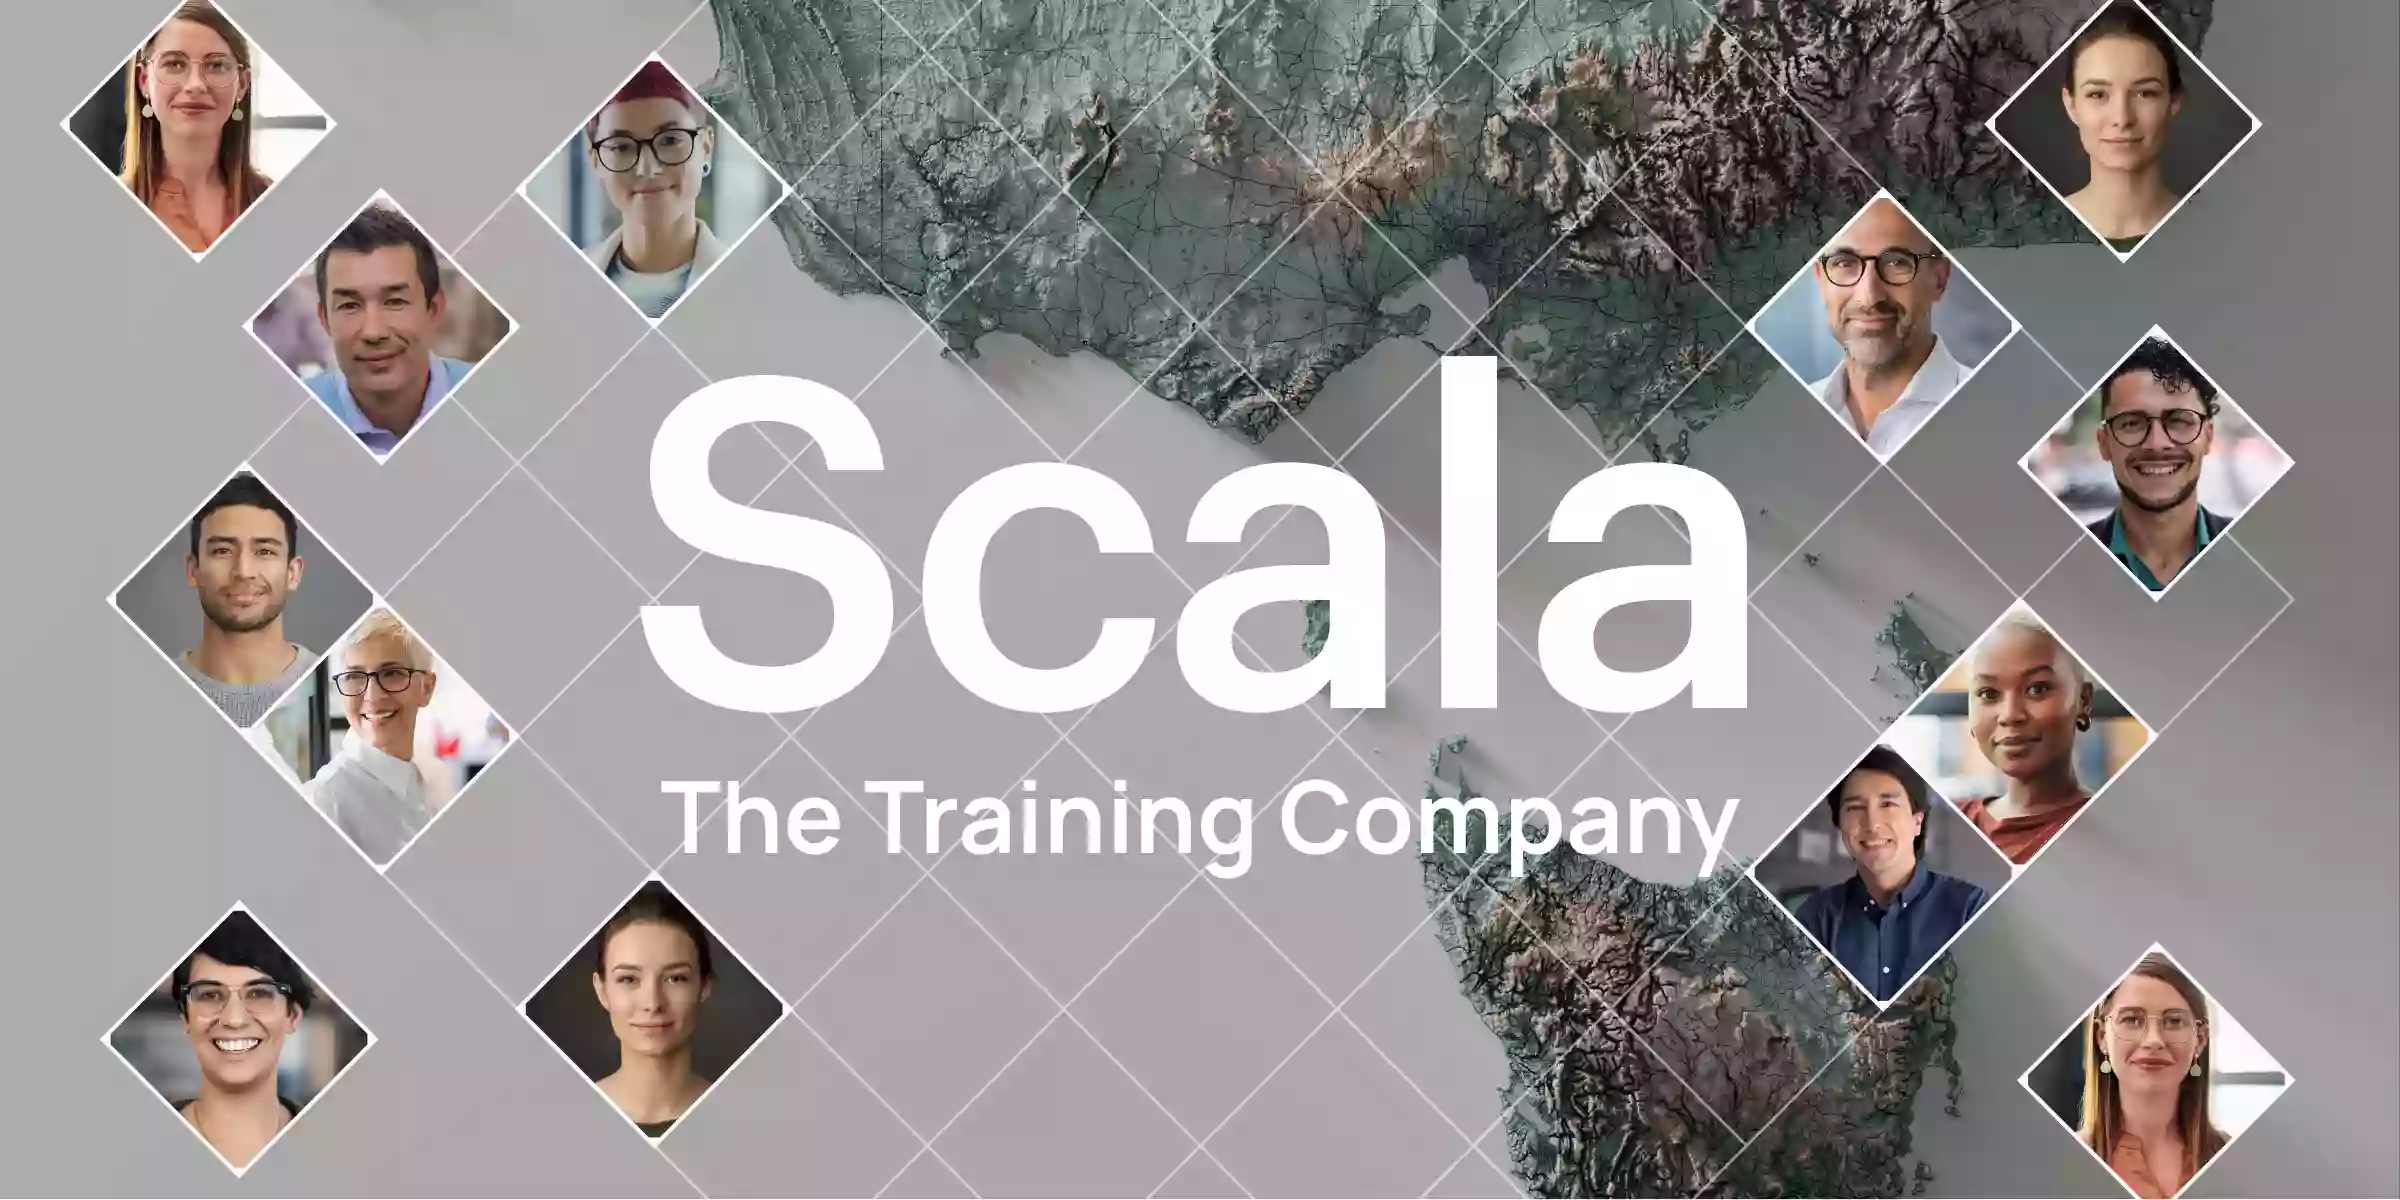 Scala the Training Company